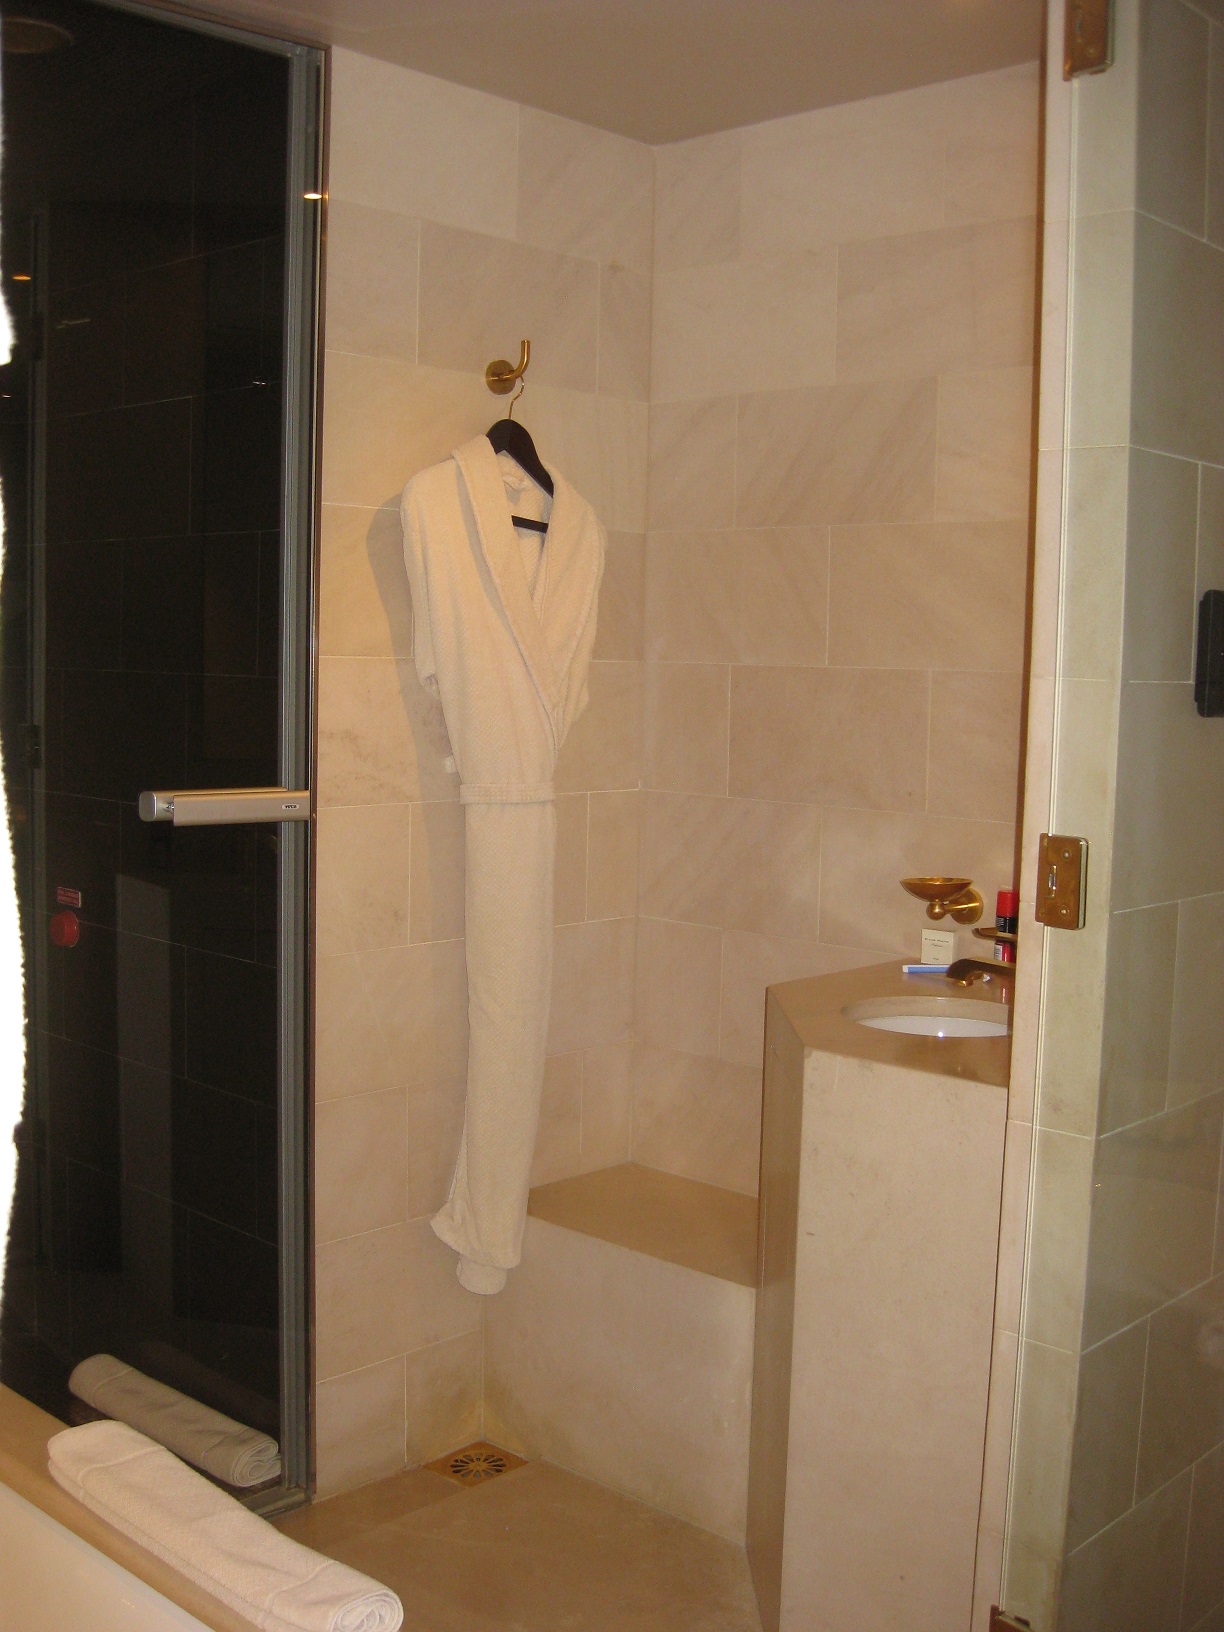 a white bathrobe on a shower